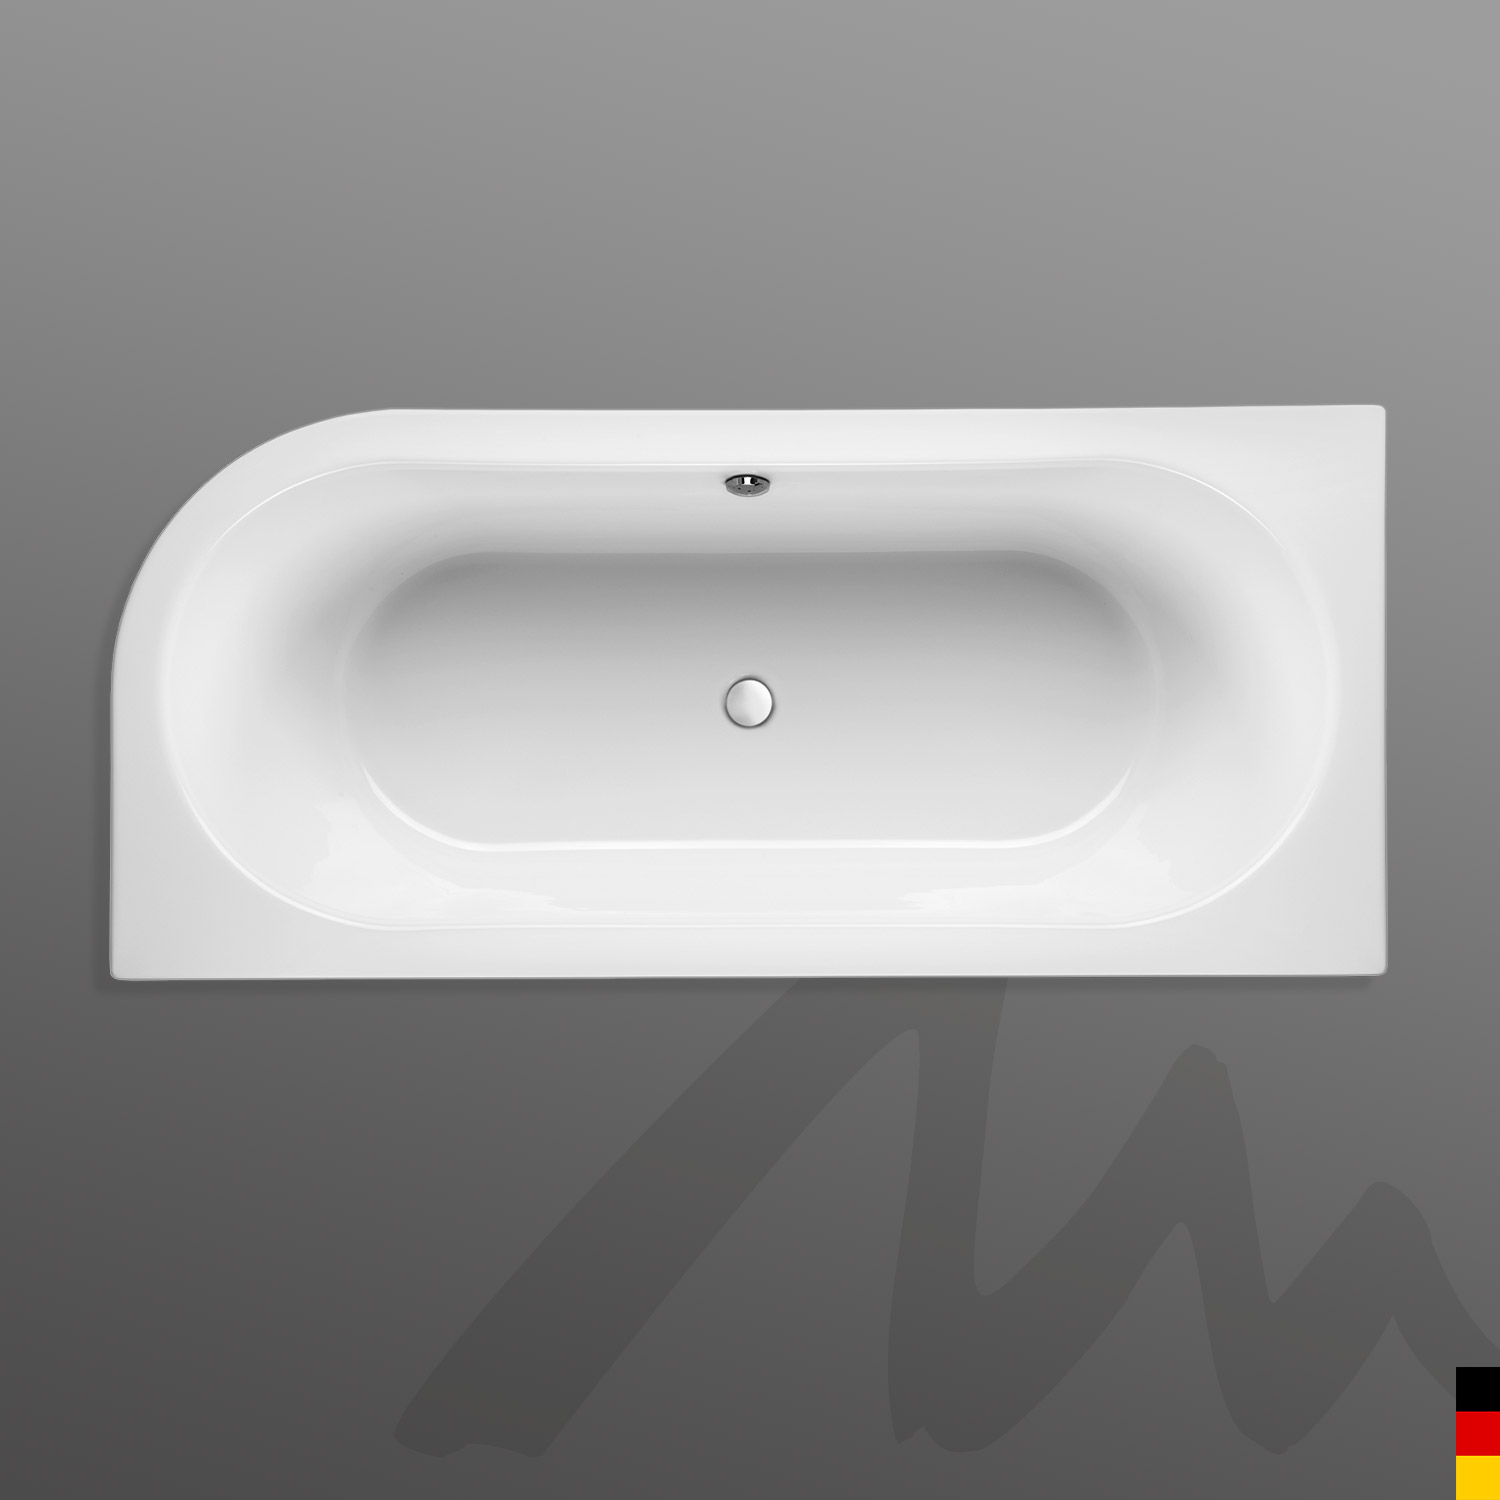 Mauersberger Badewanne Oval Primo 1 - 180/80 uno Ausführung rechts  180x80x45  Farbe:weiß